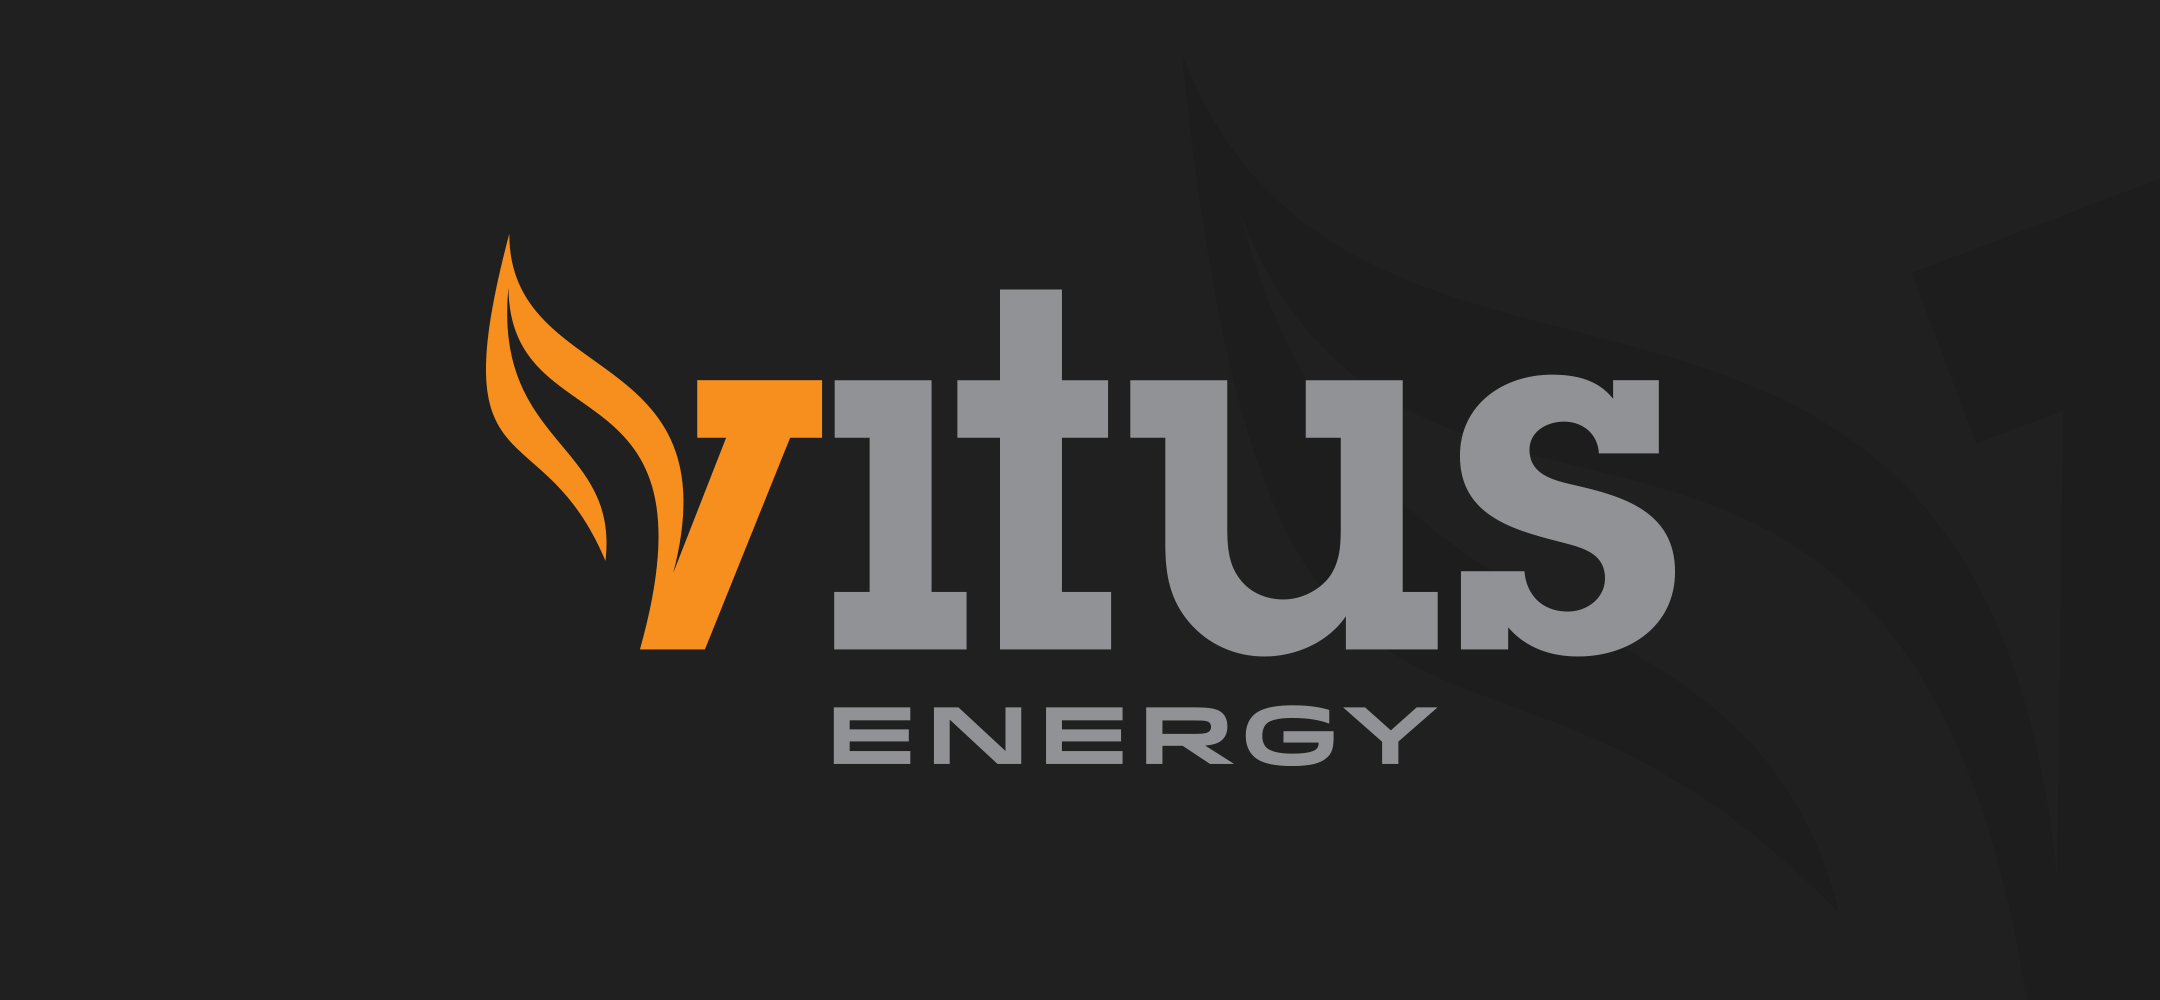 Vitus energy logo on black background. 